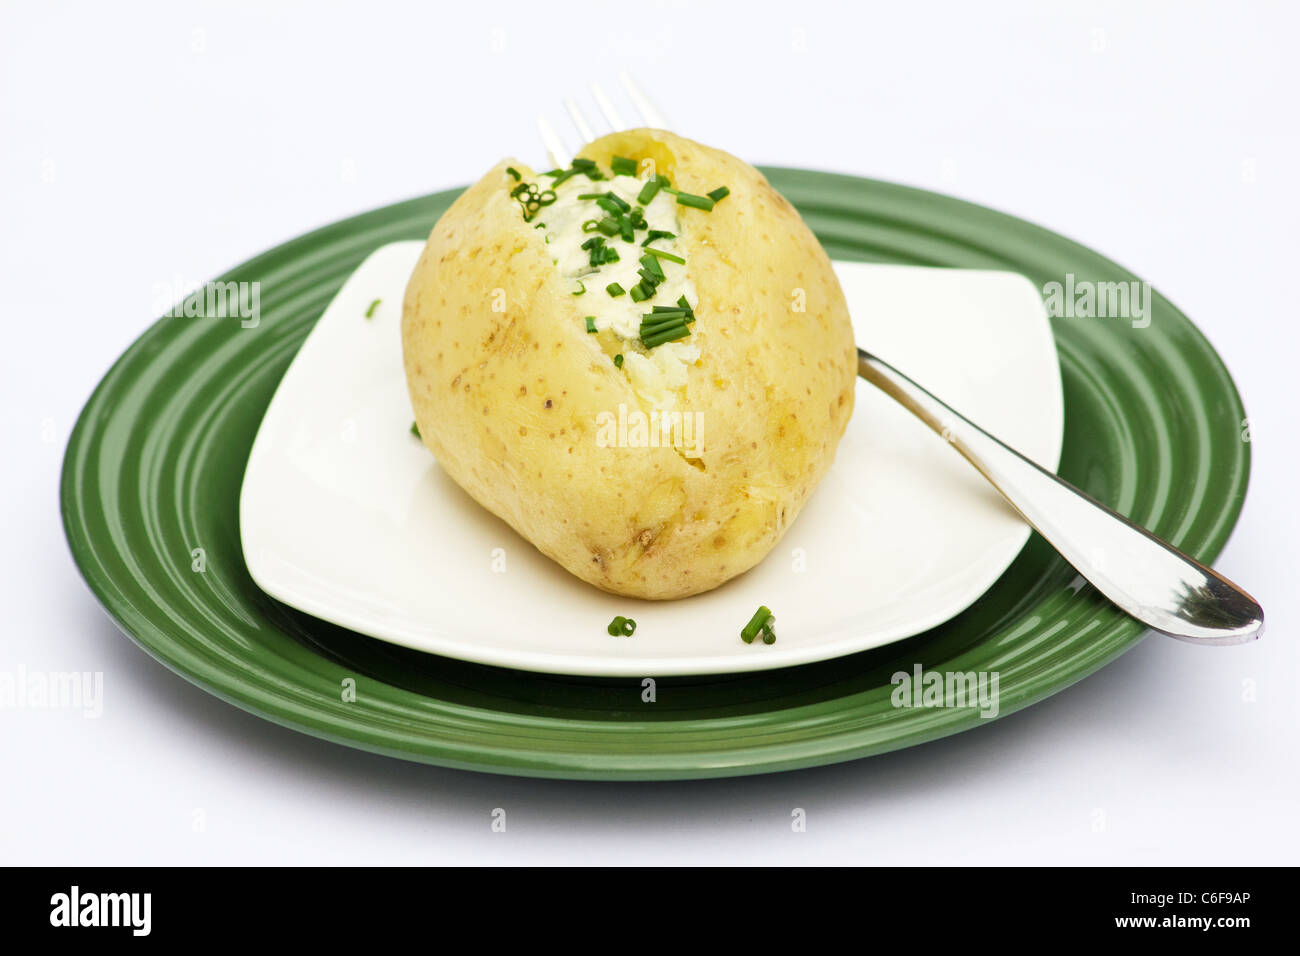 Pomme de terre au four avec du fromage Gorgonzola topping et ciboulette Banque D'Images